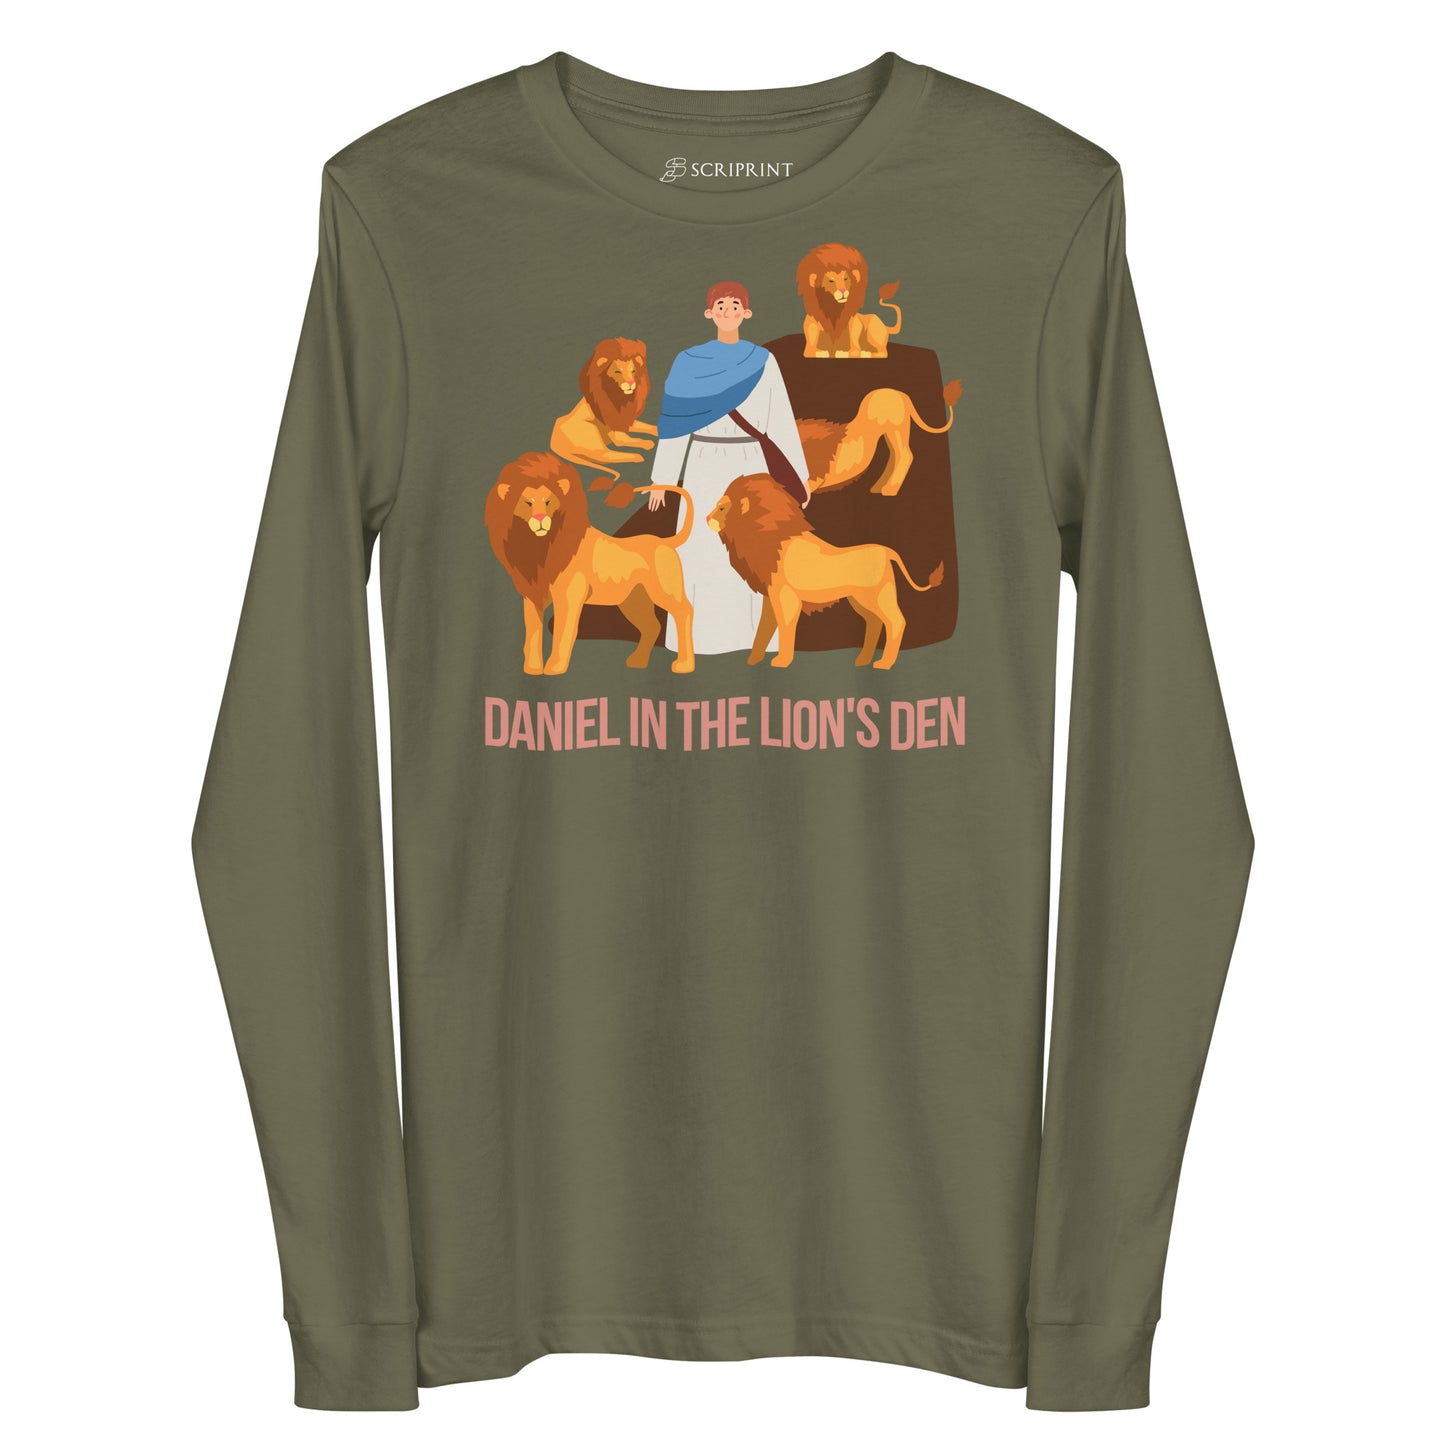 Daniel in the Lion's Den Women's Long Sleeve Tee